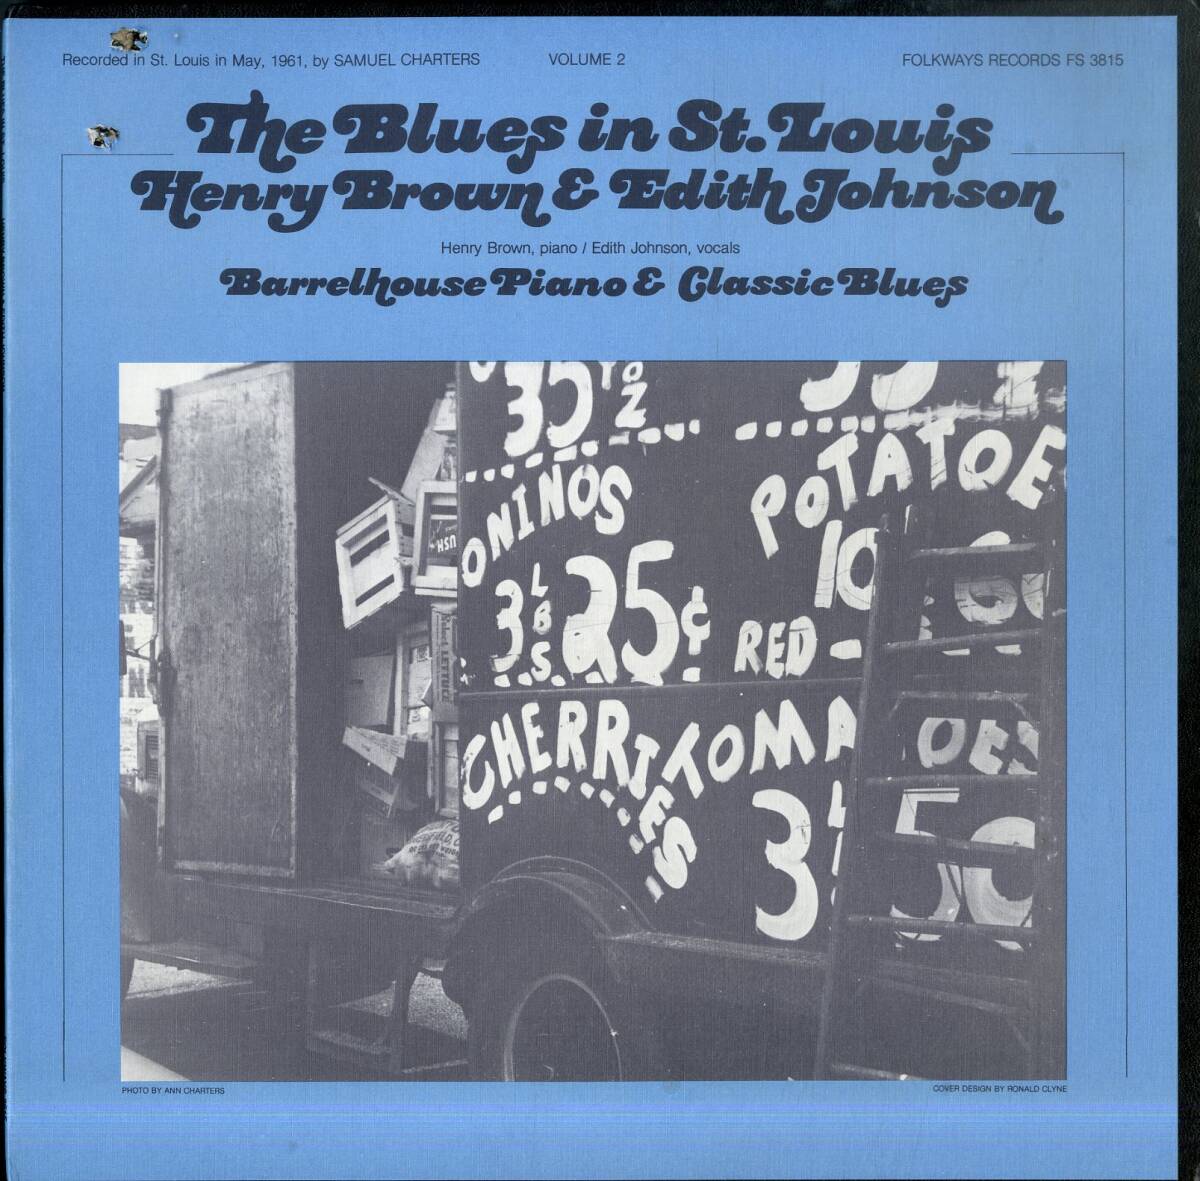 A00592706/LP/ヘンリー・ブラウン & エディス・ジョンソン「Barrelhouse Piano & Classic Blues (FS-3815・ブルース・BLUES)」の画像1